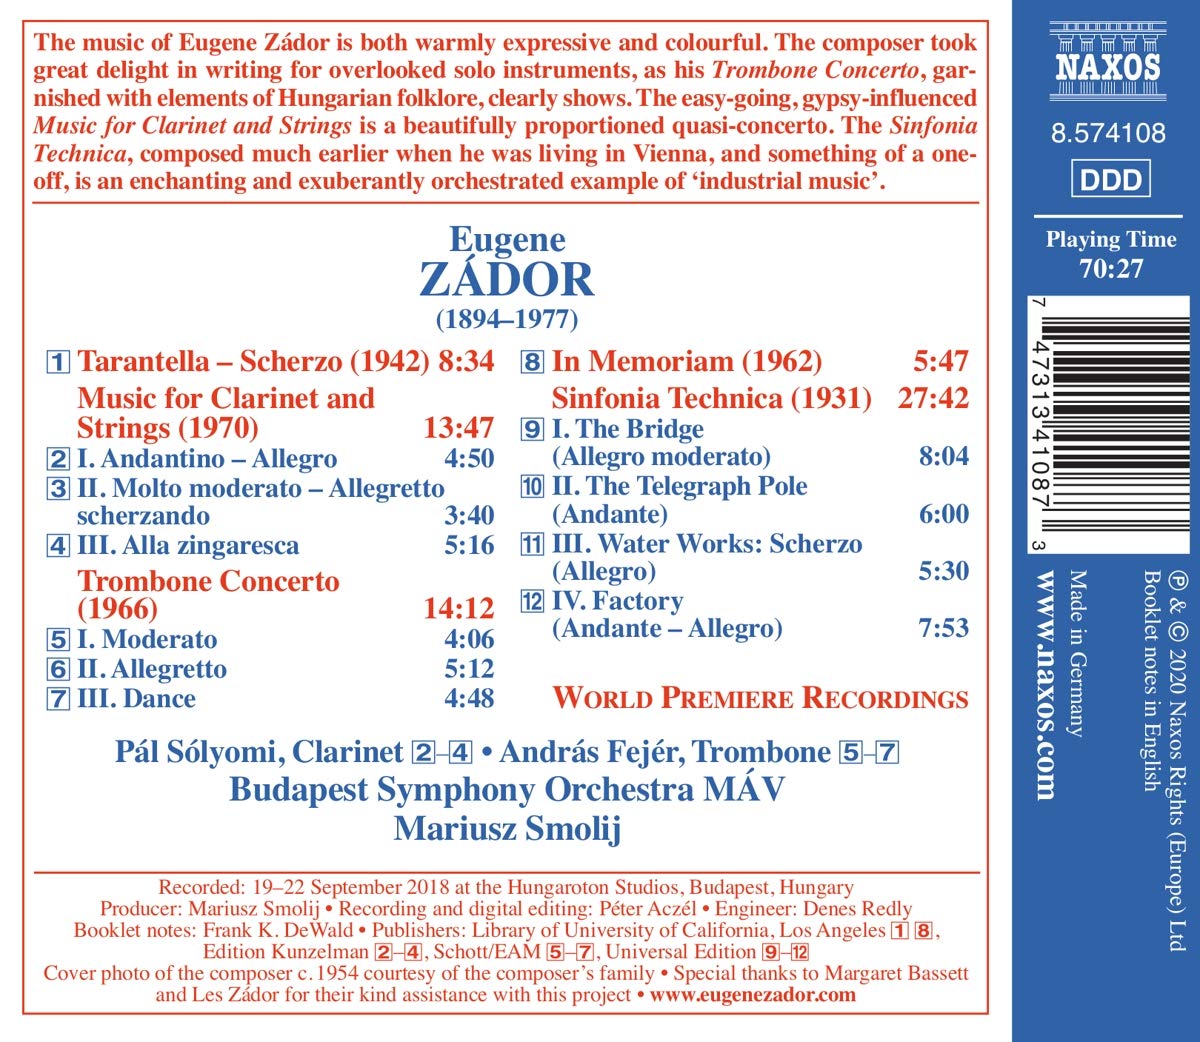 Mariusz Smolij 예뇌 자도르: 신포니아 테크니카, 클라리넷과 현을 위한 음악, 트럼본 협주곡 등 (Eugene Zador: Sinfonia Technica etc.)